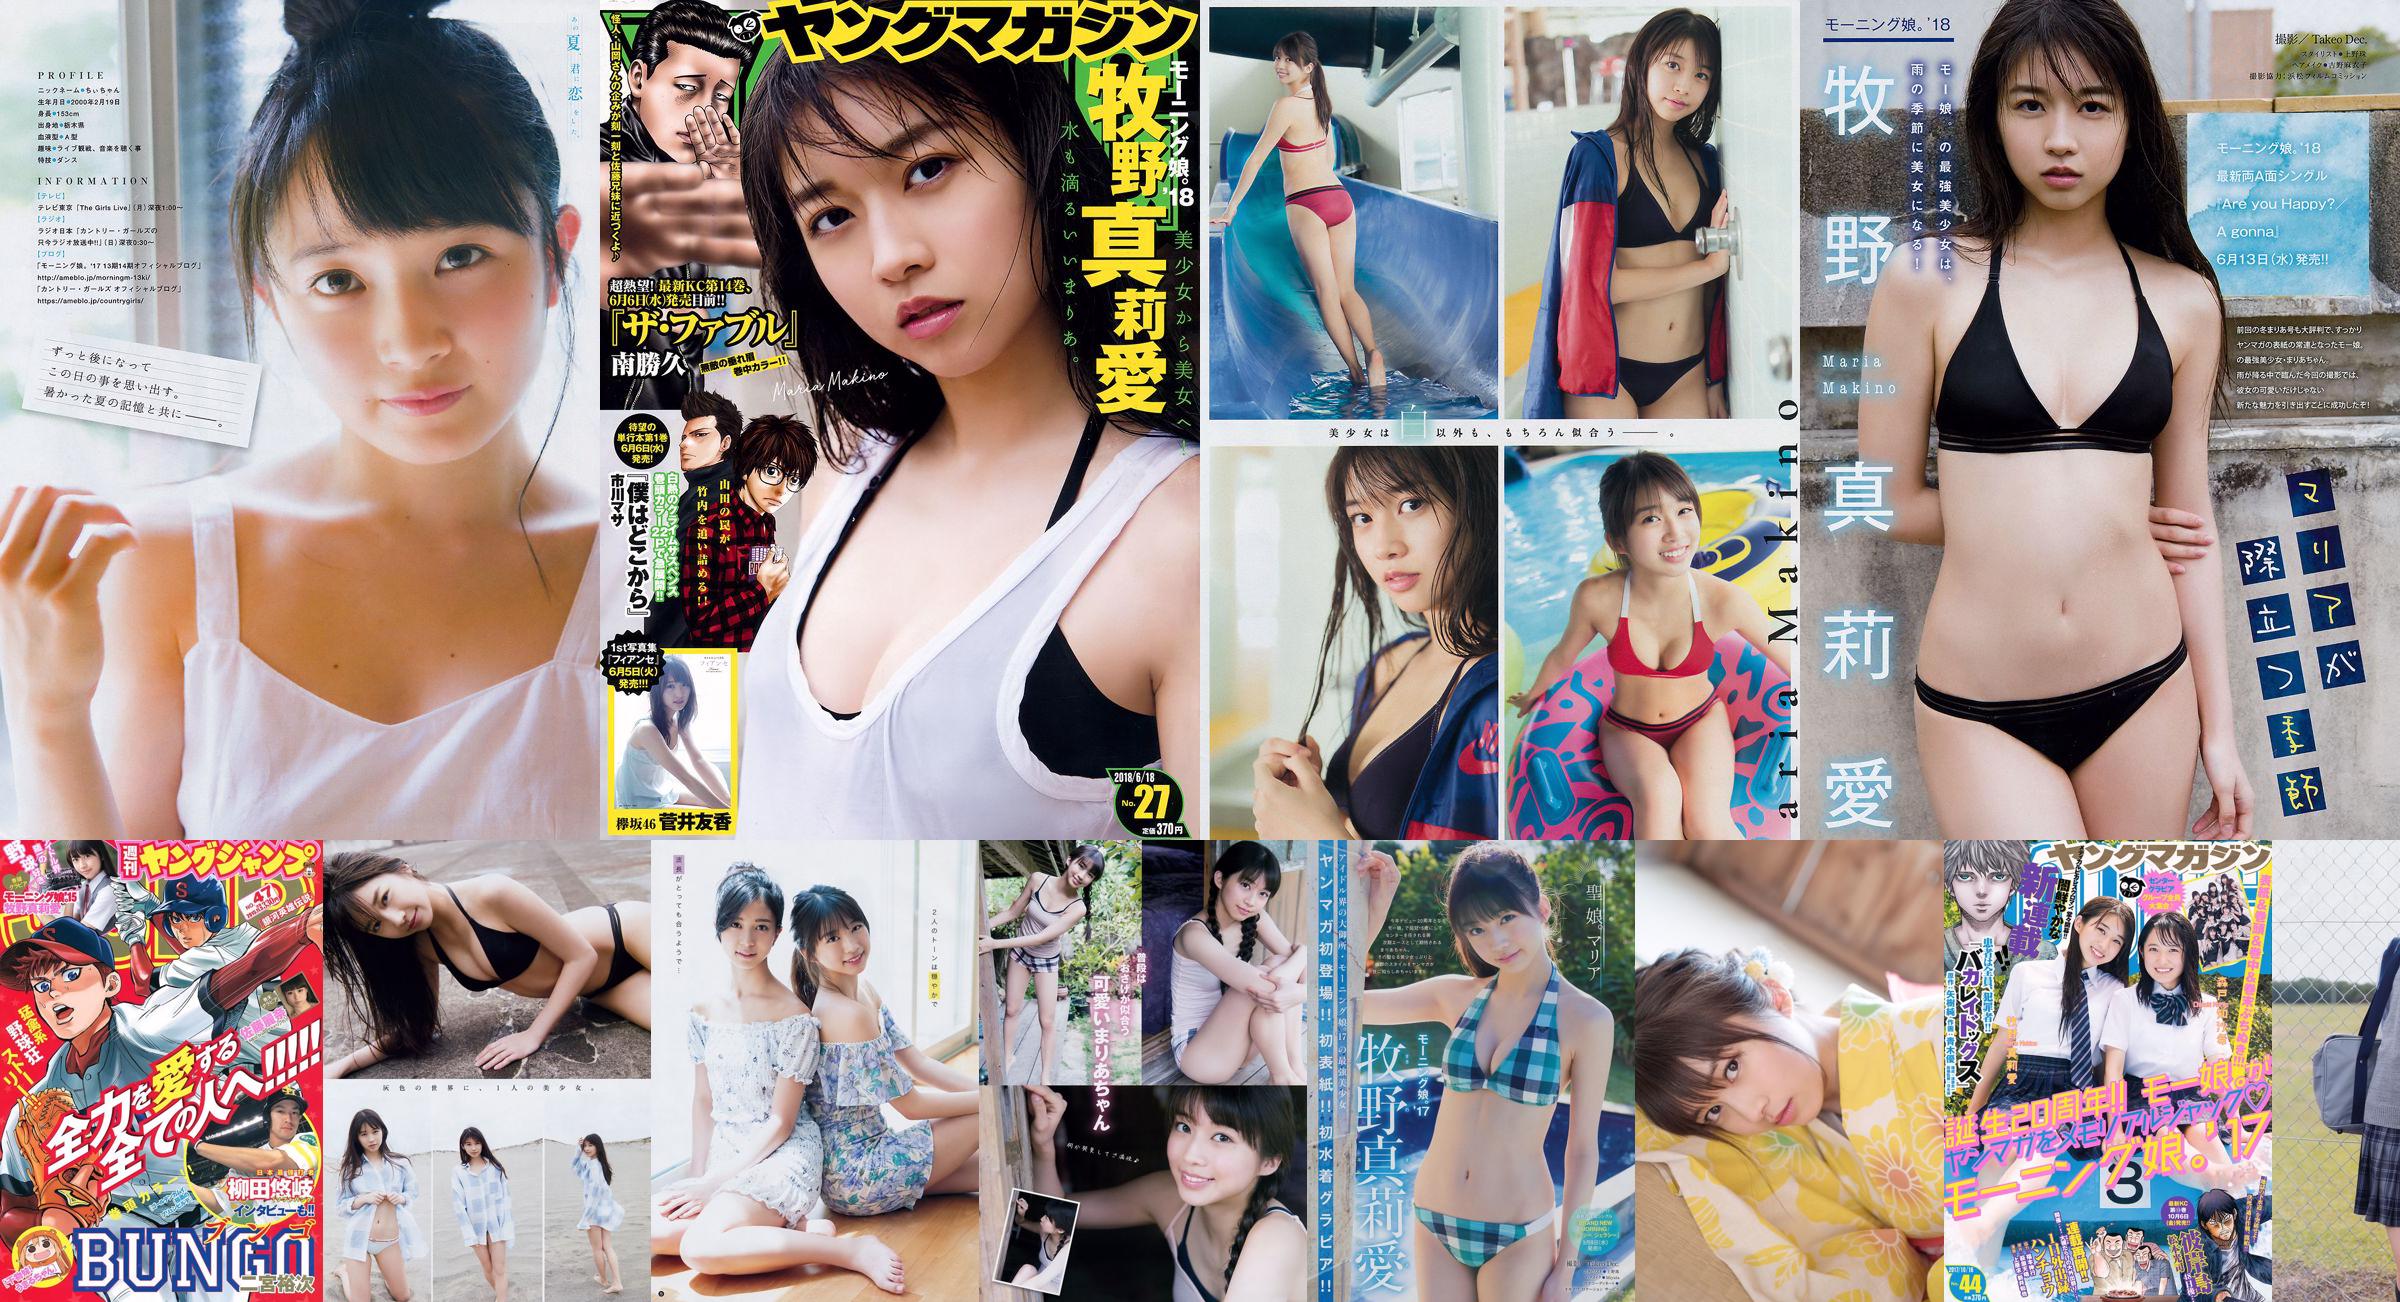 [Young Magazine] Maria Makino Riko Yamagishi Musubu Funaki Nanami Ryokawa Rei Inoue Risa Yamaki 2018 No.43 Photo No.241aa8 Pagina 1